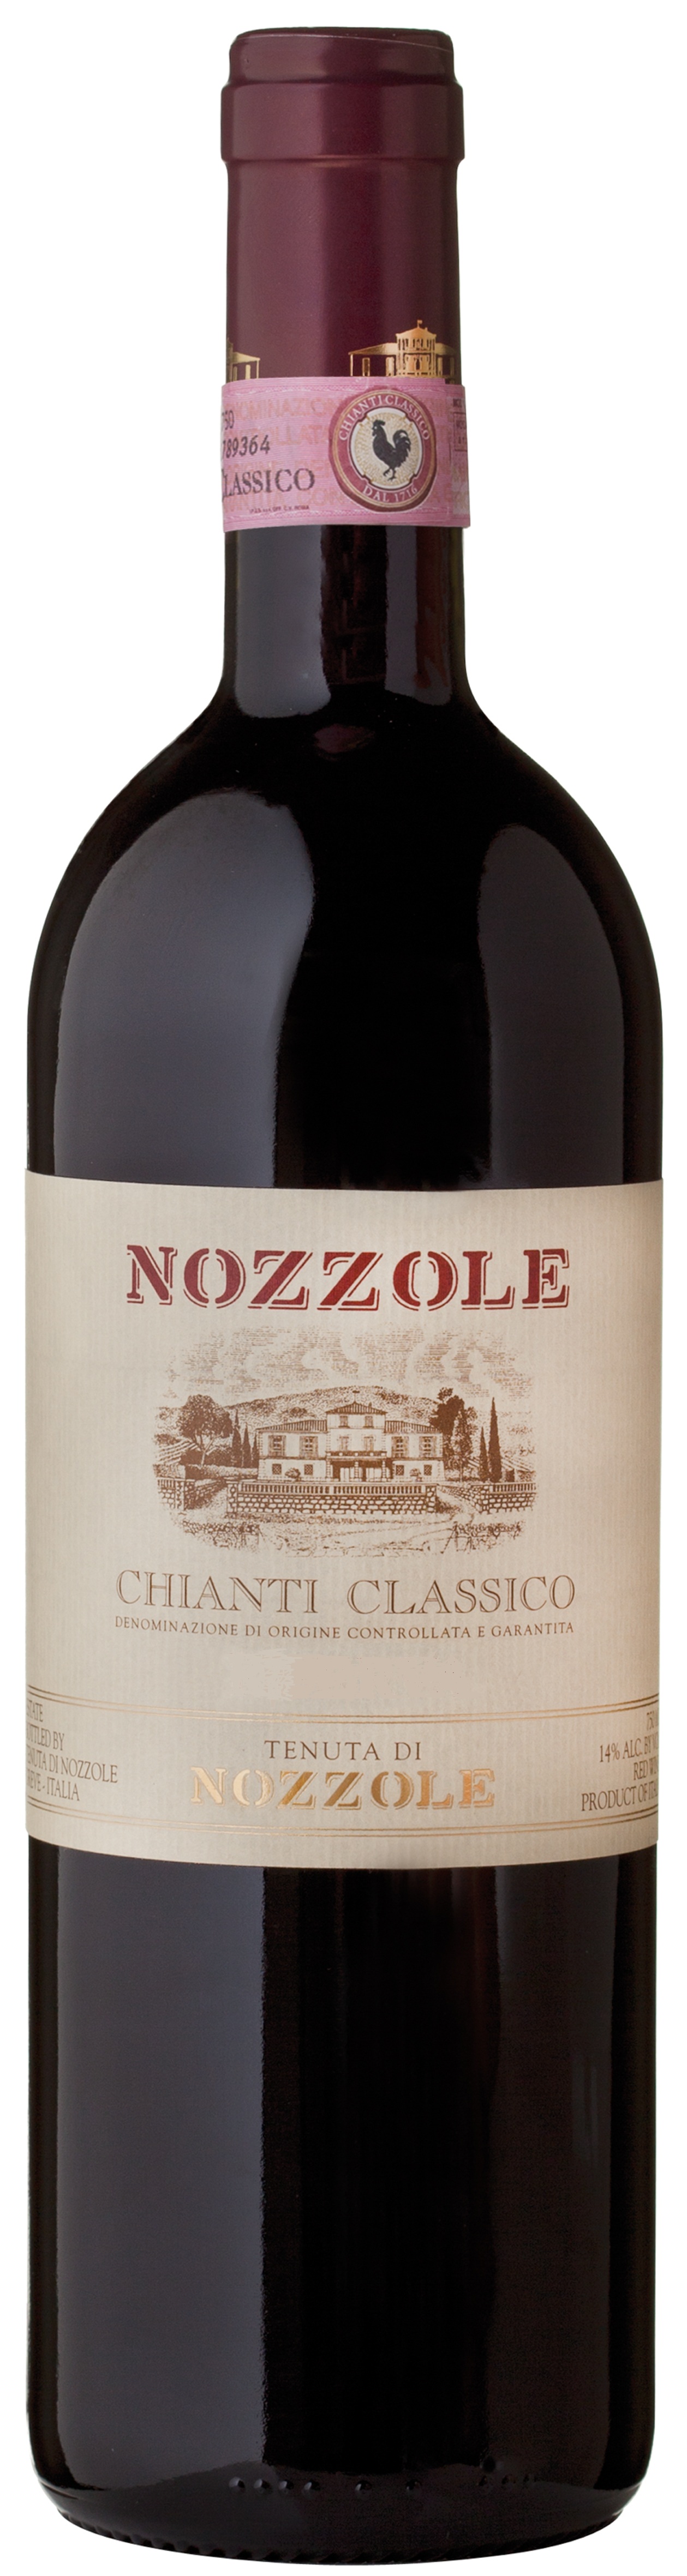 2016 Nozzole Chianti Classico Riserva image